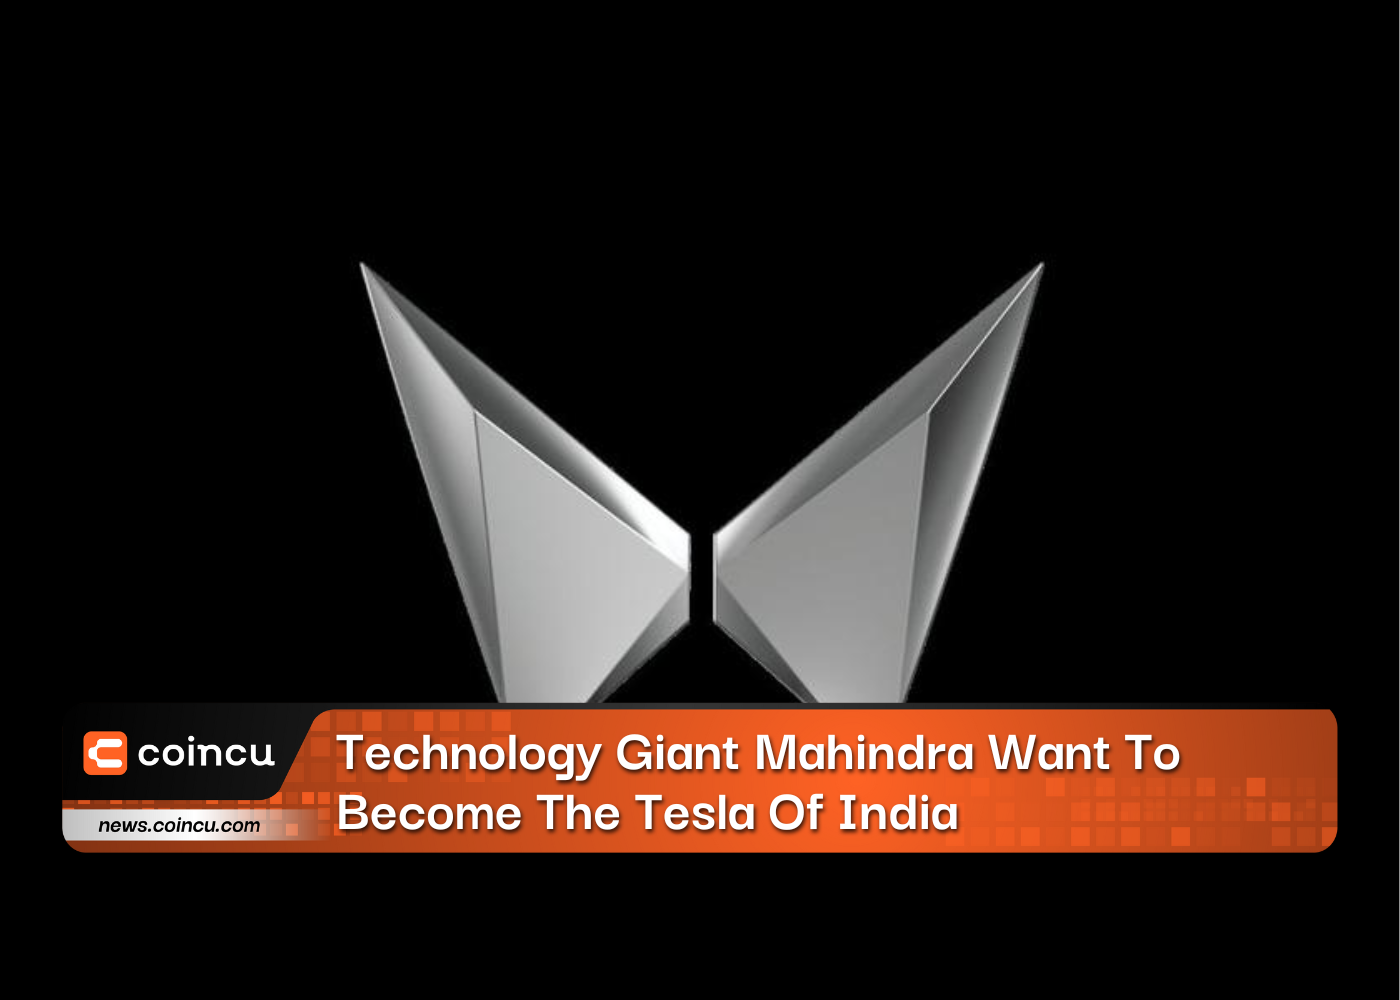 Der Technologieriese Mahindra will der Tesla Indiens werden